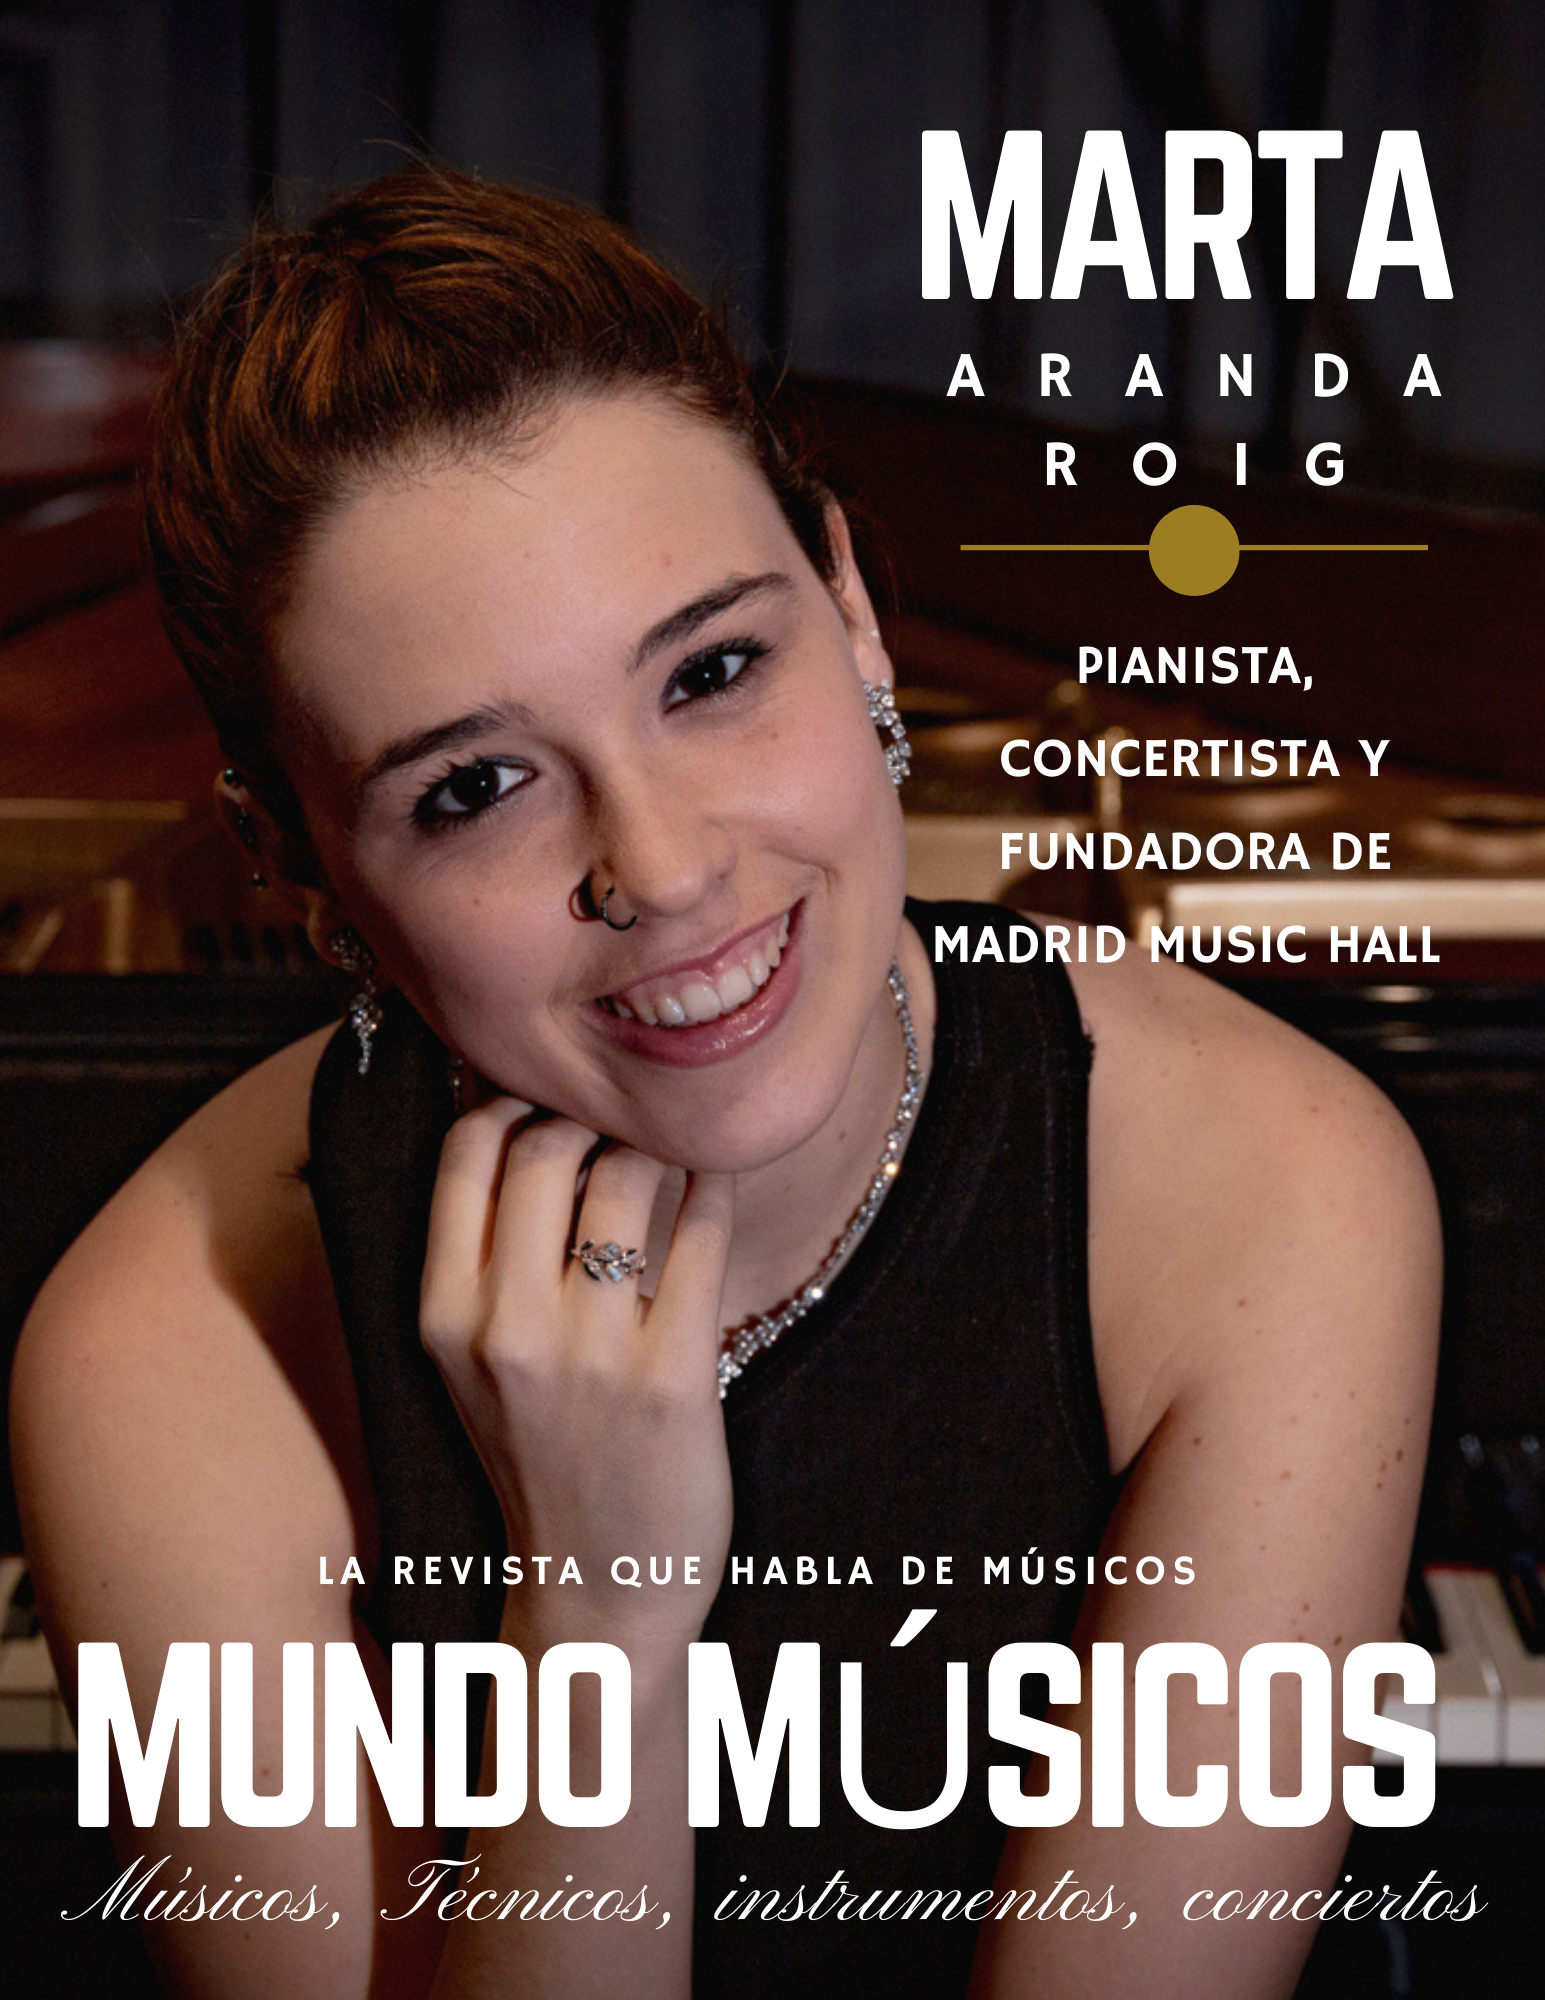 Marta Aranda, pianista, concertista y fundadora de Madrid Music Hall